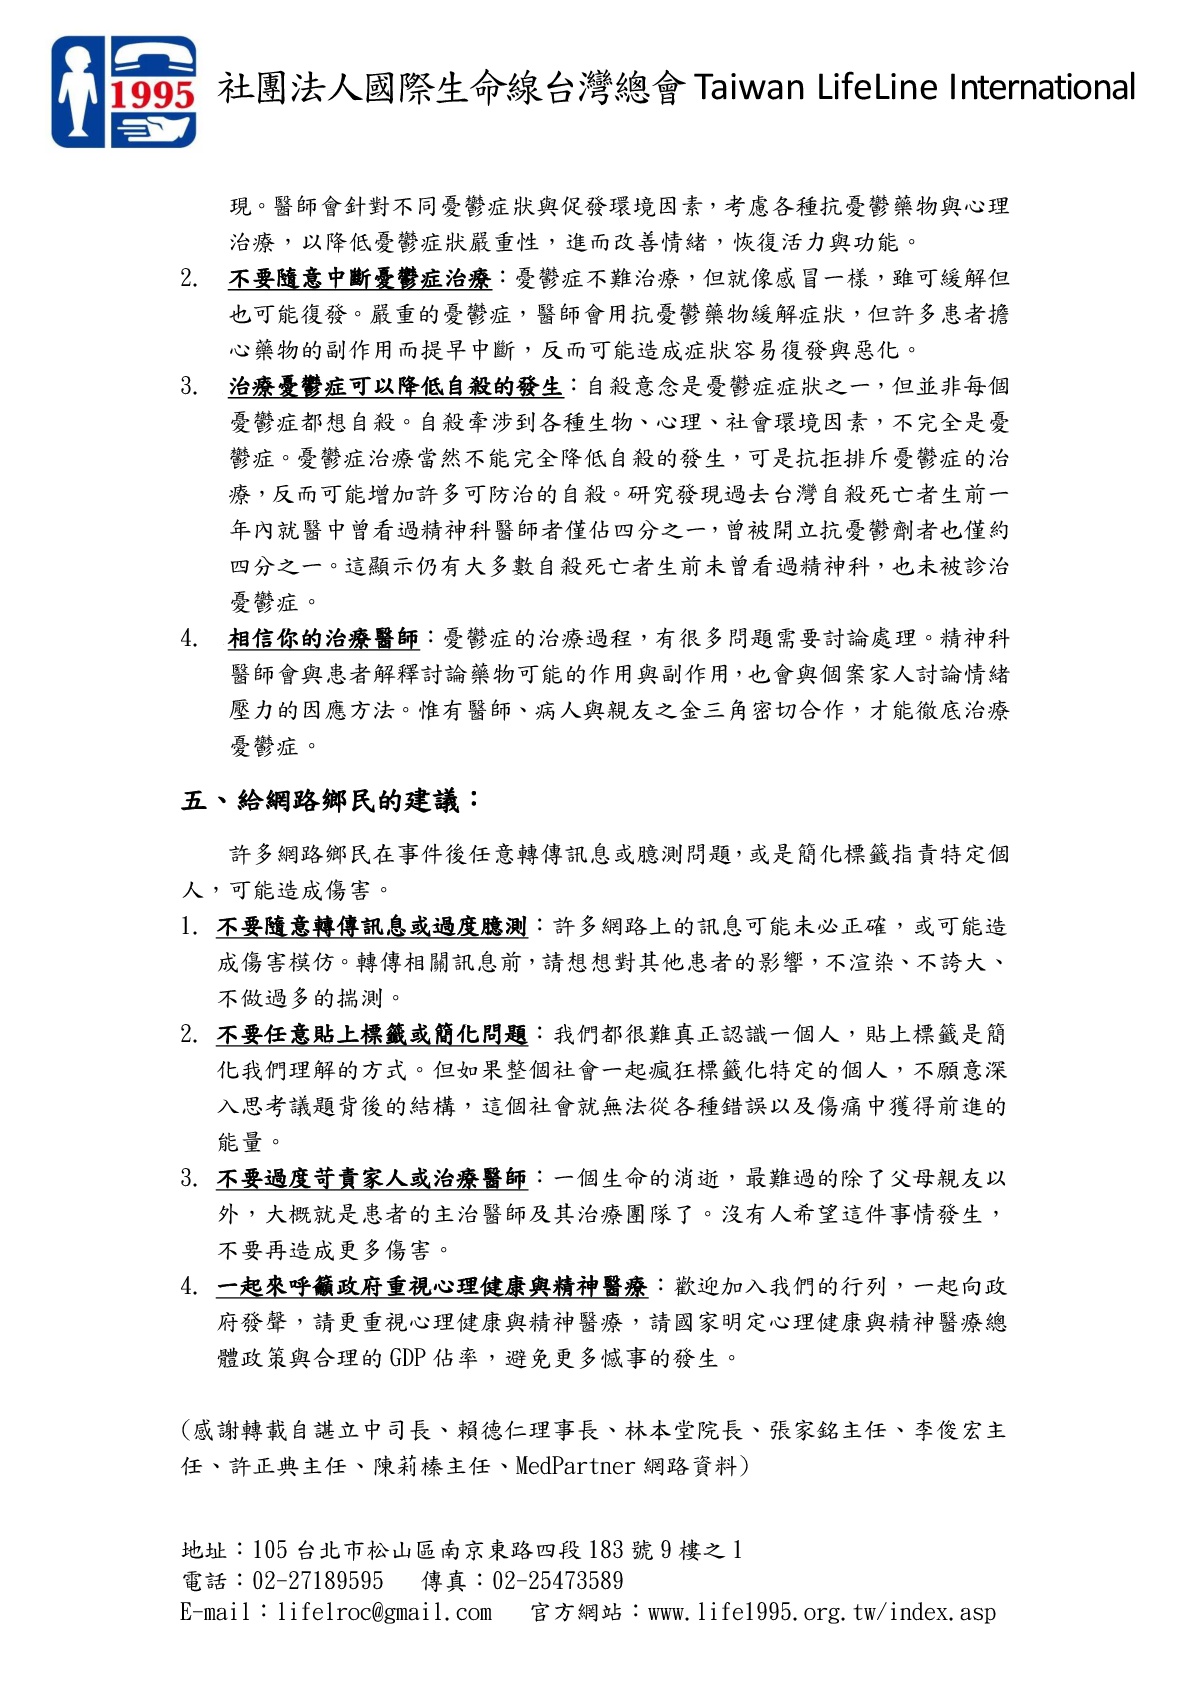 有關林姓女作家新聞，台灣精神醫學會之呼籲